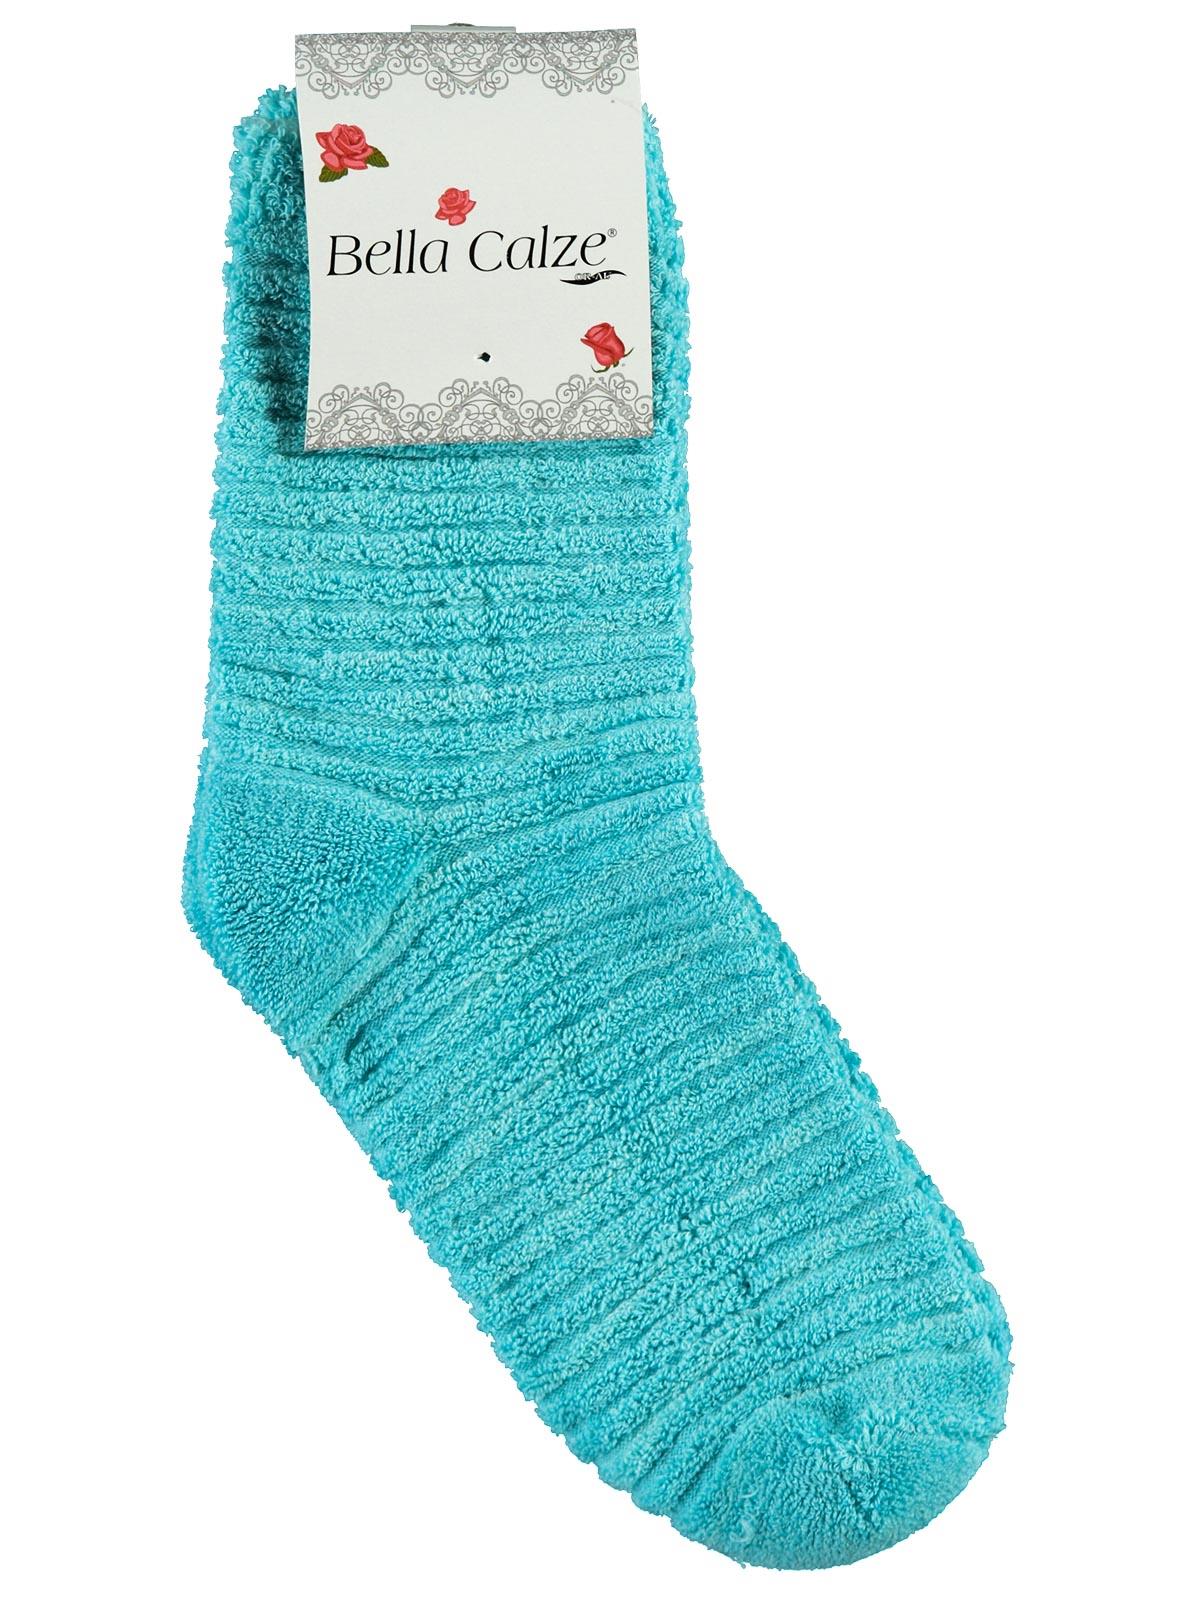 Bella Calze Kız Çocuk Ters Havlu Soket Çorap 36-40 Numara Turkuaz